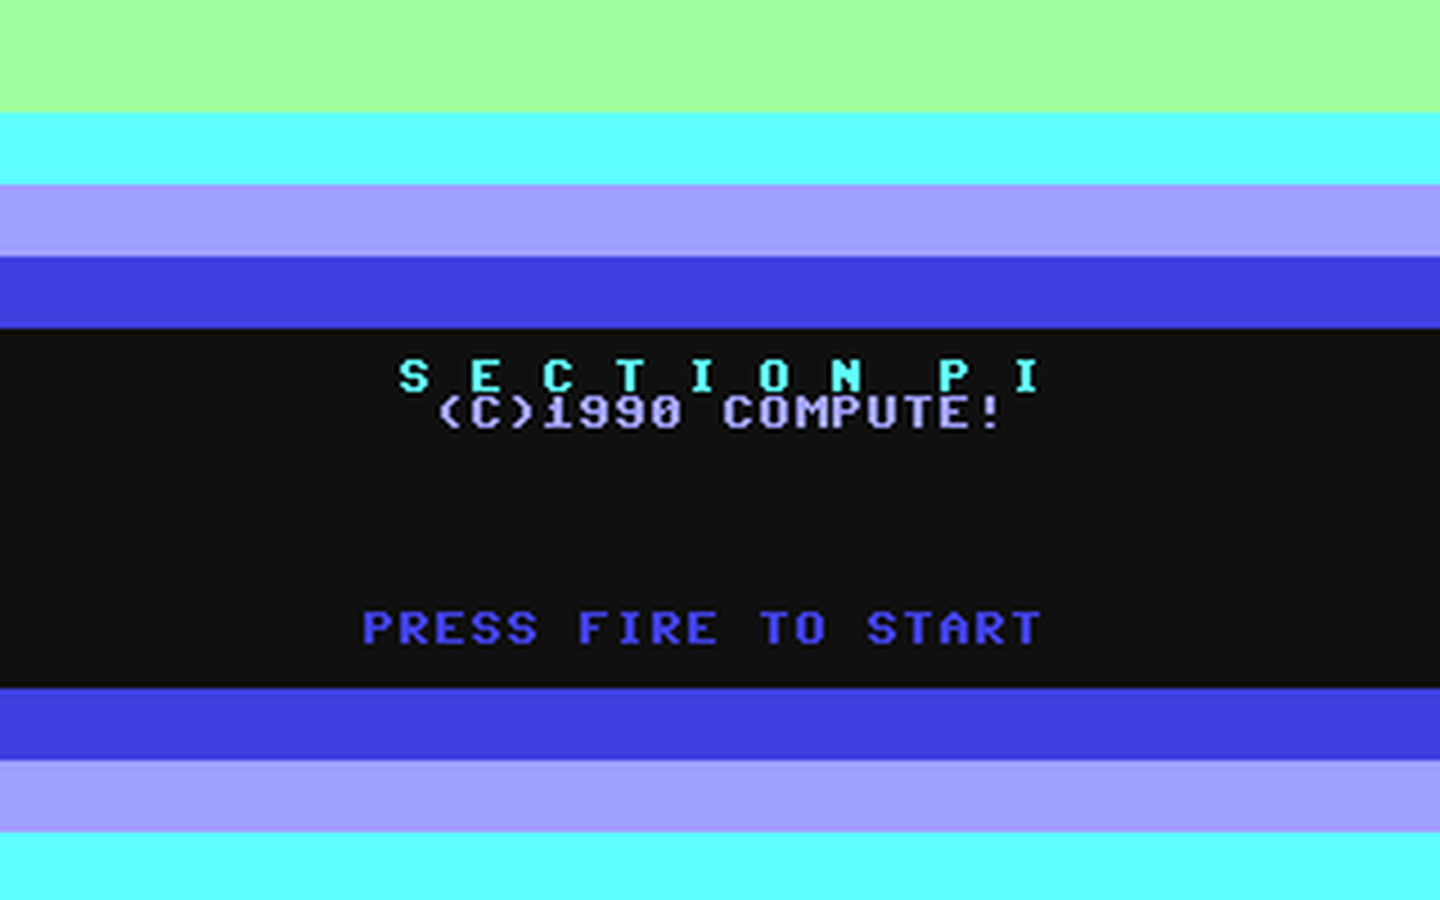 C64 GameBase Section_Pi COMPUTE!_Publications,_Inc./COMPUTE!'s_Gazette 1990